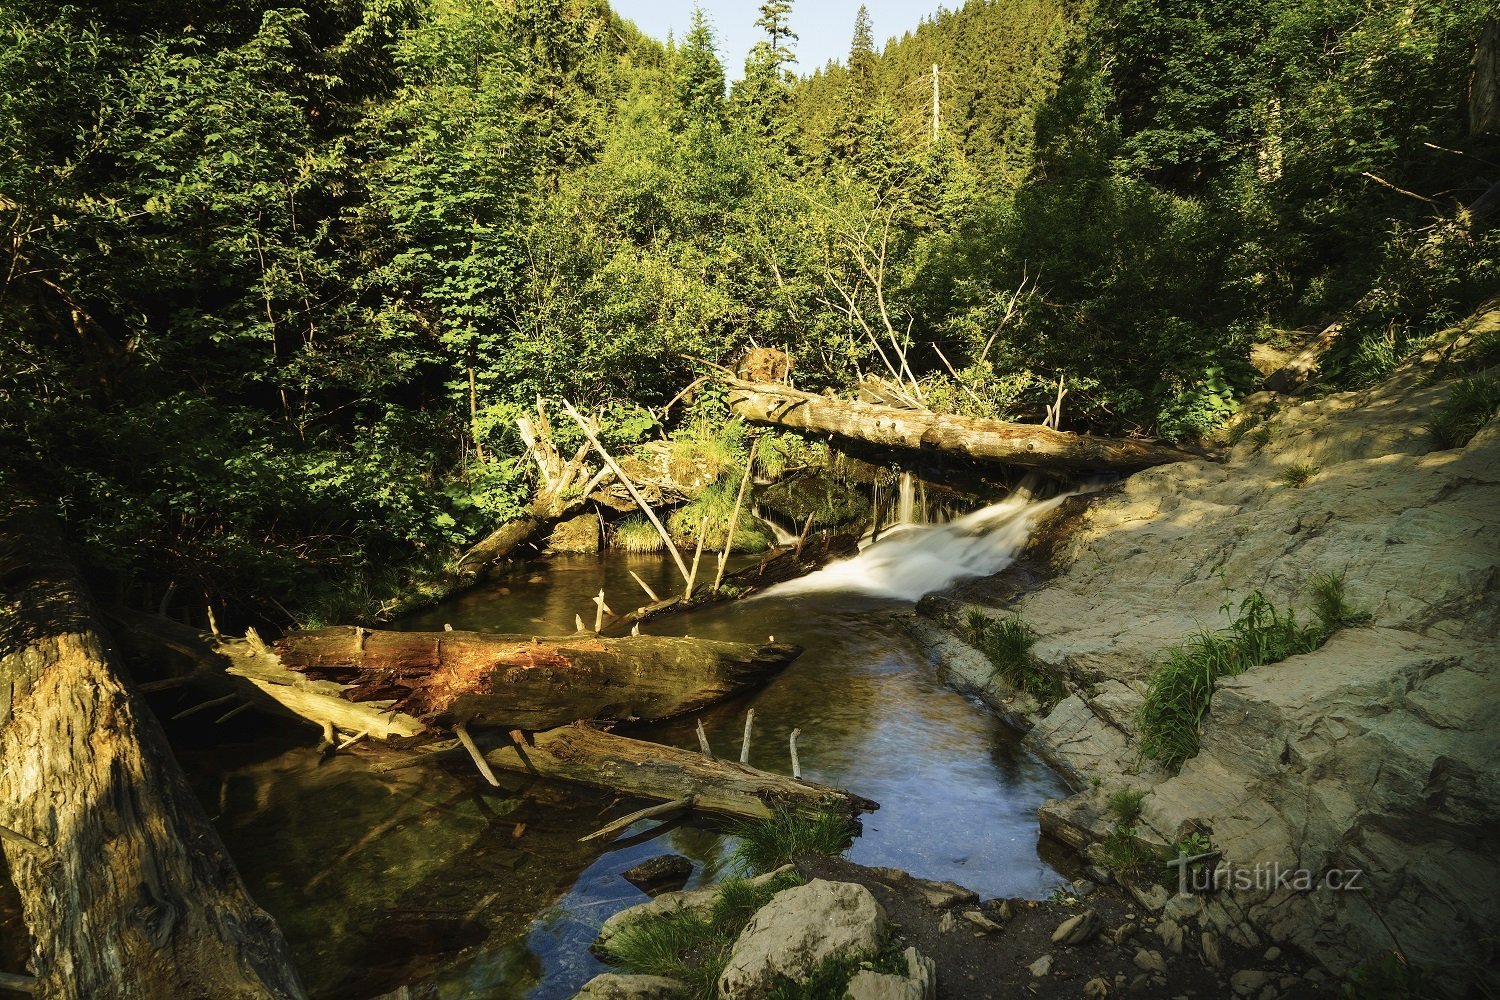 Дикий горный ручей Белая Опава, Источник фото: Pivovar Holba, Shutterstock